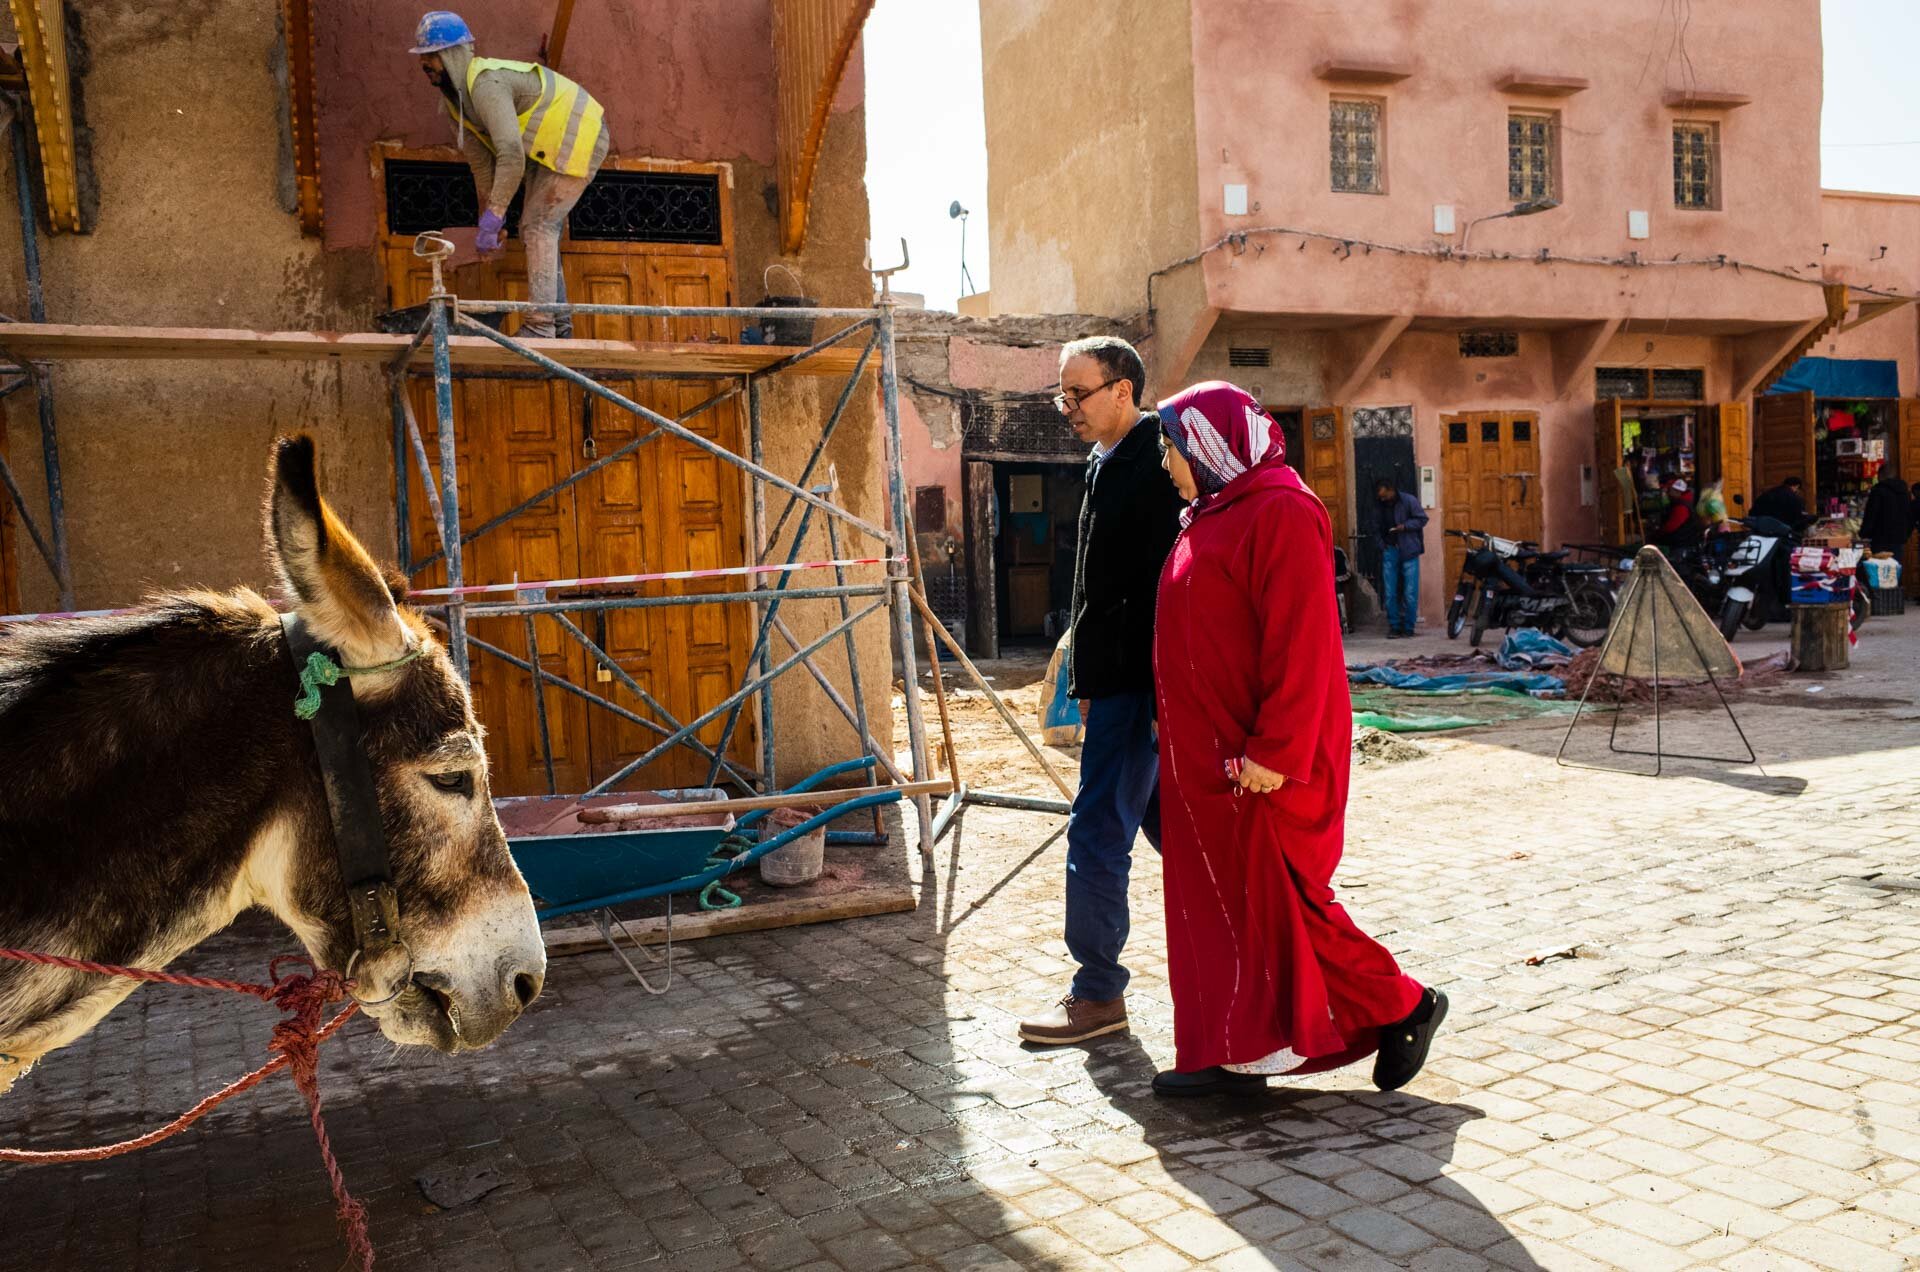 Marocco, marocco on the road, viaggio in marocco, marrakech, medina, bazar, viaggio di coppia, viaggo in marocco itinerario, marrakech marocco, marrakech riad, marrakech hotel, marrakech cosa vedere, marrakech cosa fare-10.jpg